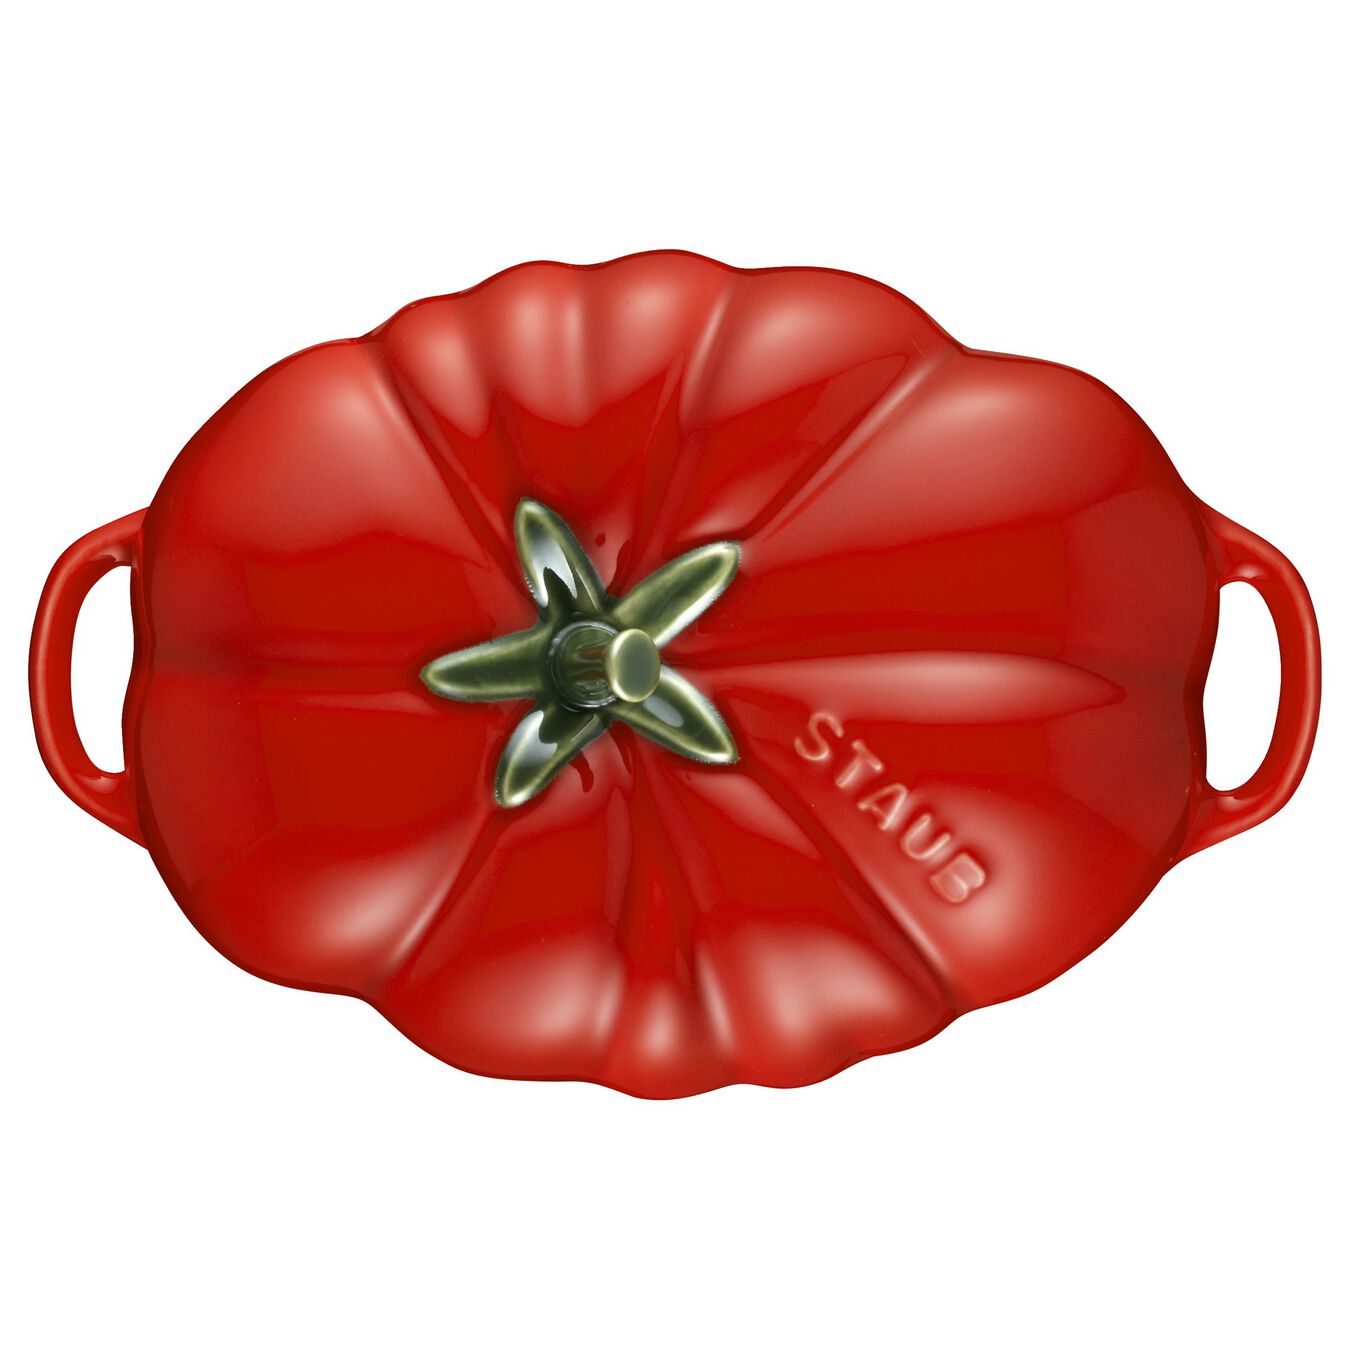 Cocotte 16 cm, Tomate, Cerise, Céramique,,large 5